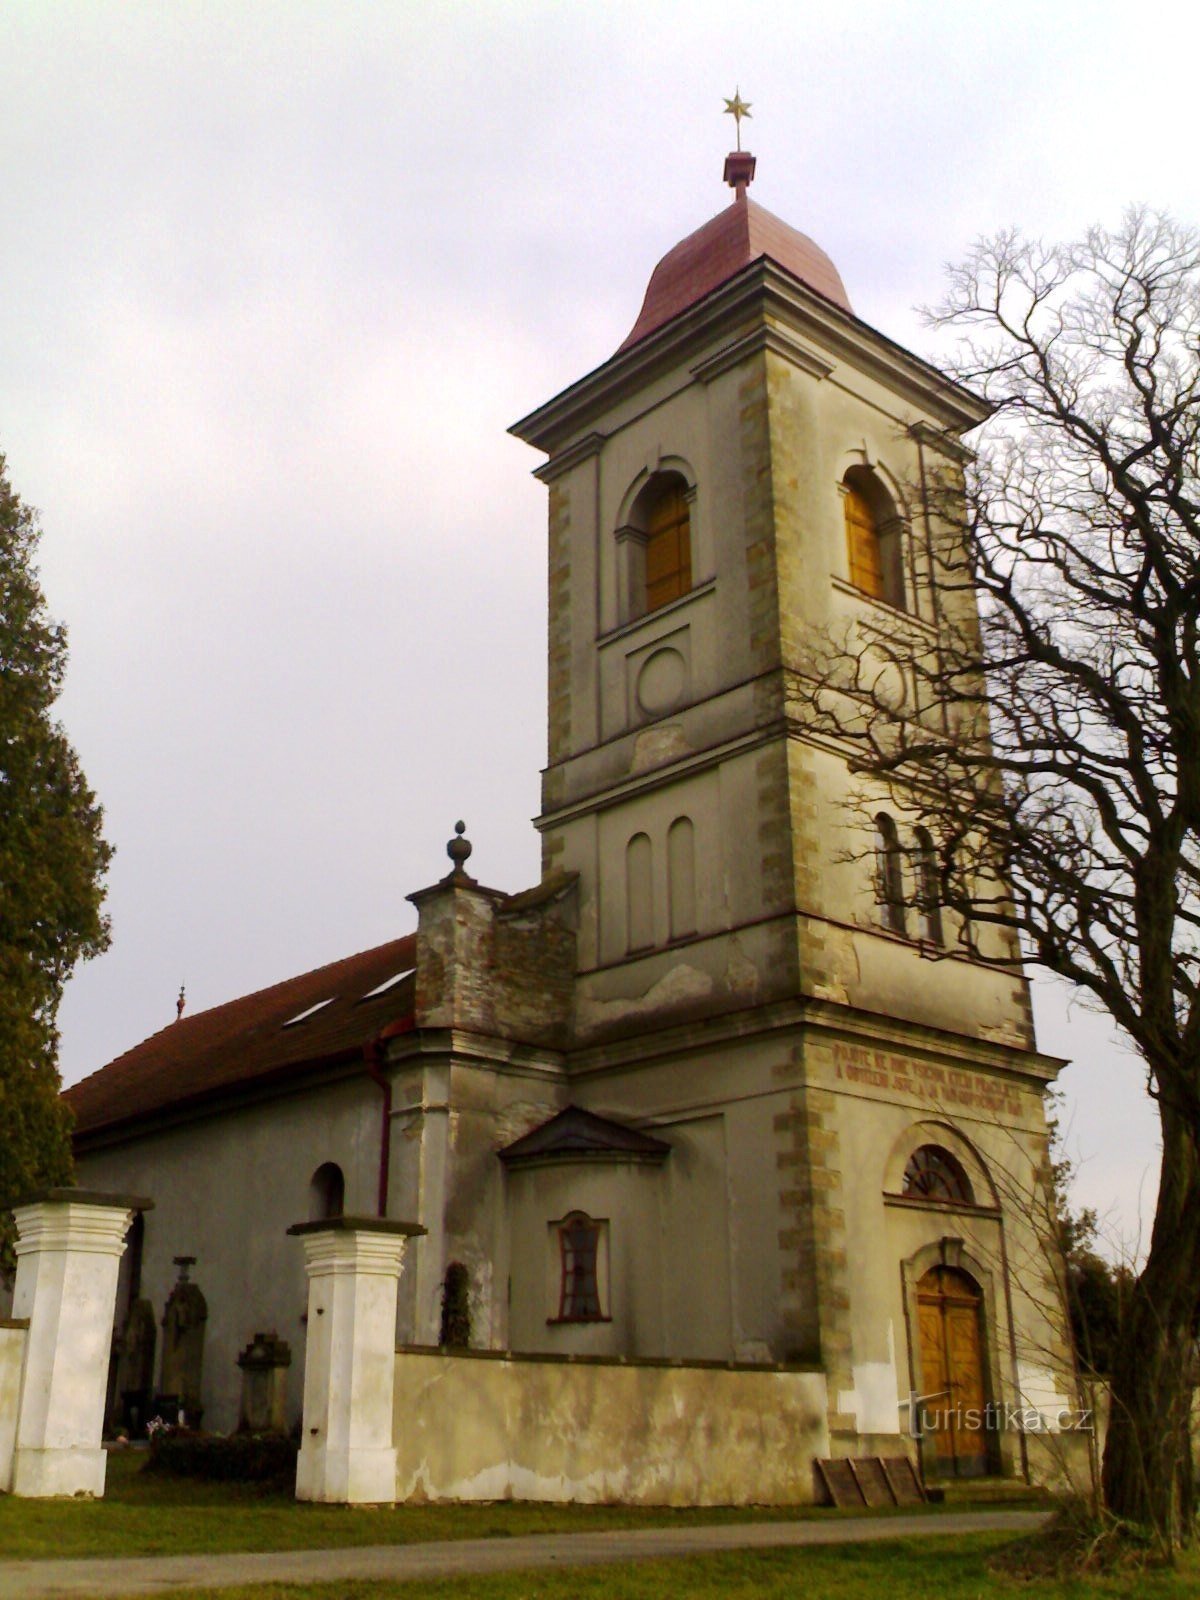 Klášter nad Dědinou - église de l'Église évangélique des frères tchèques